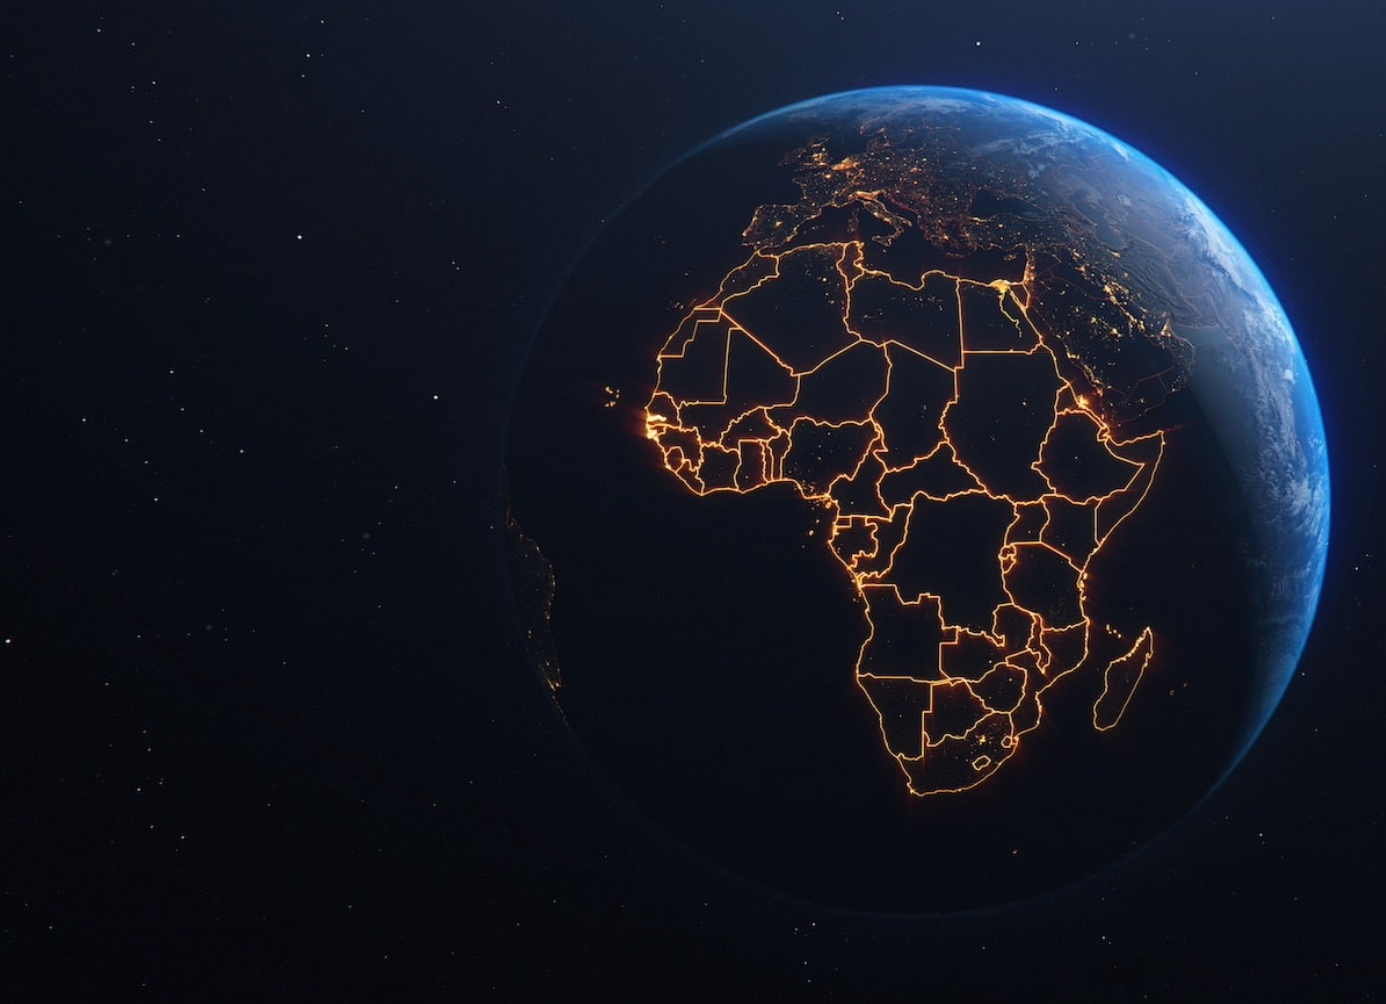 De l’eau potable dans toute l’Afrique : le pari de Jean-Philippe Compain